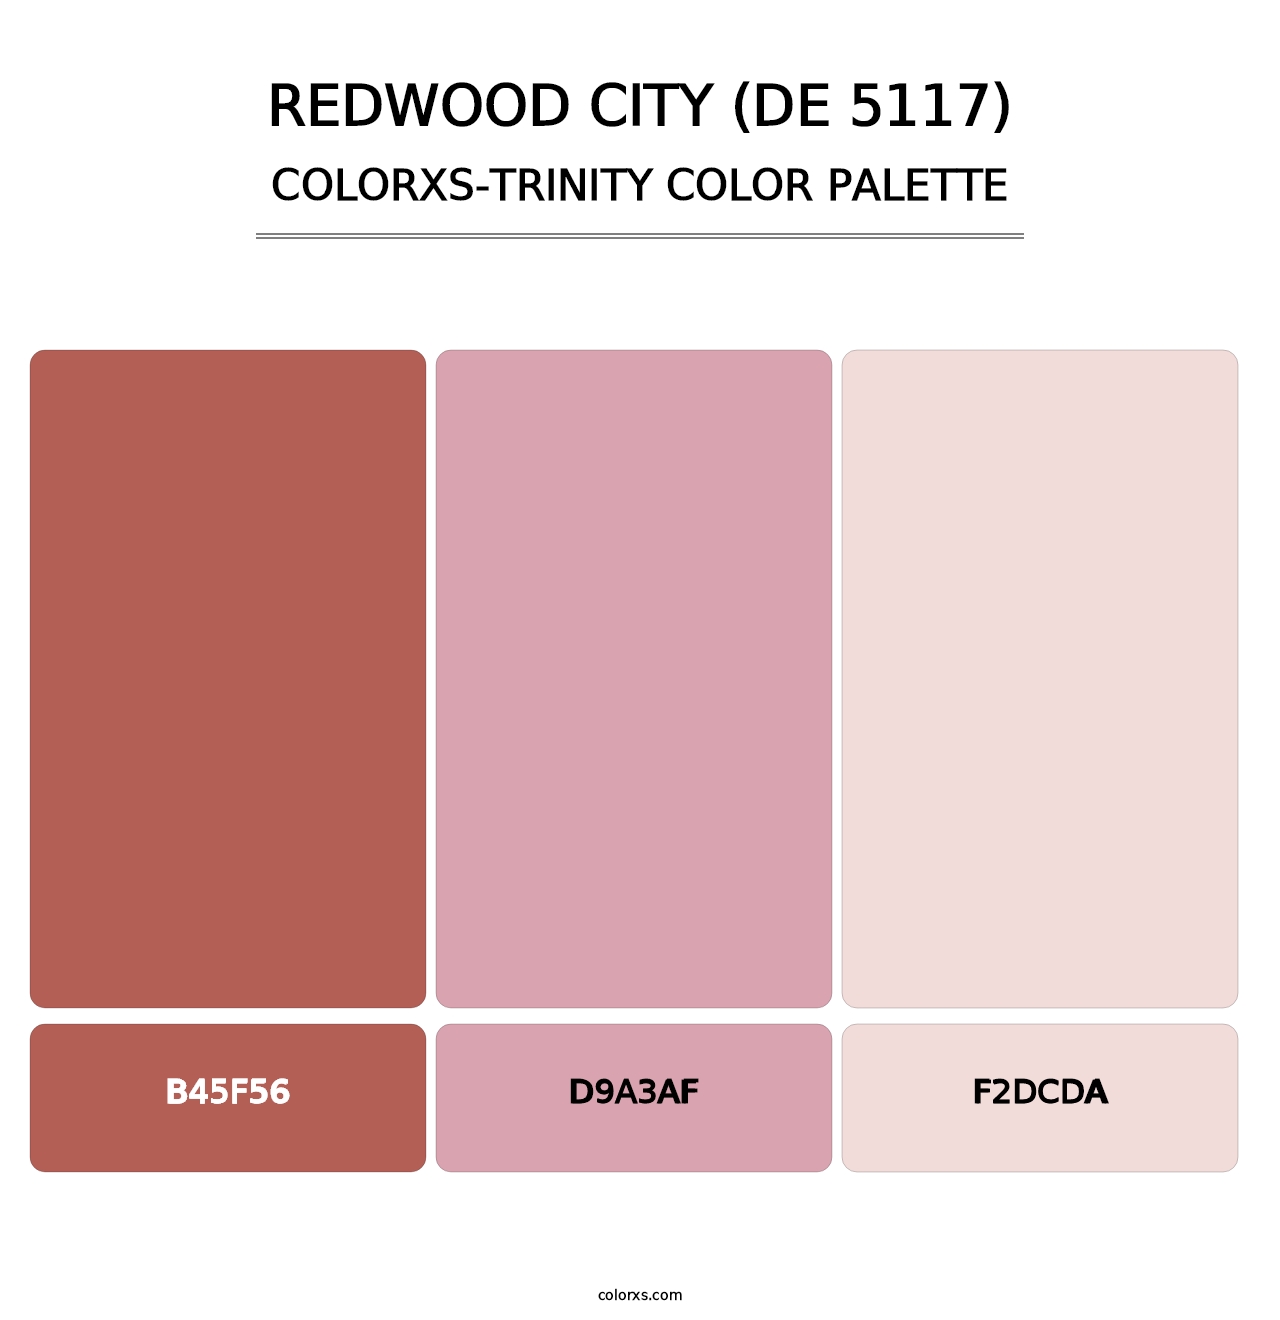 Redwood City (DE 5117) - Colorxs Trinity Palette